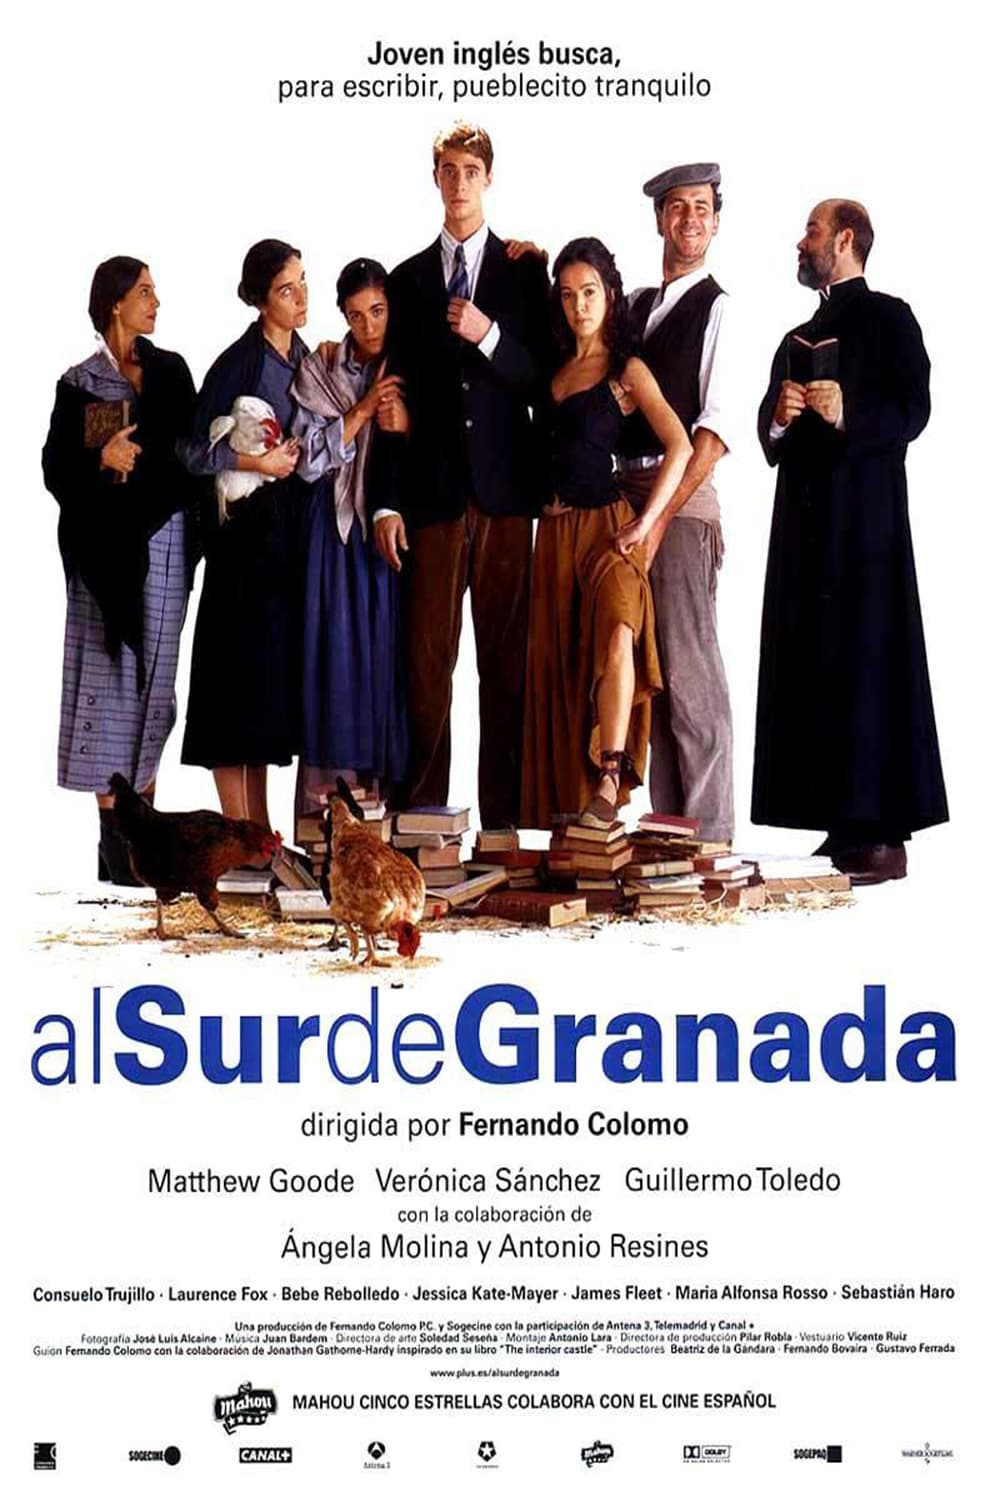 Al sur de Granada film